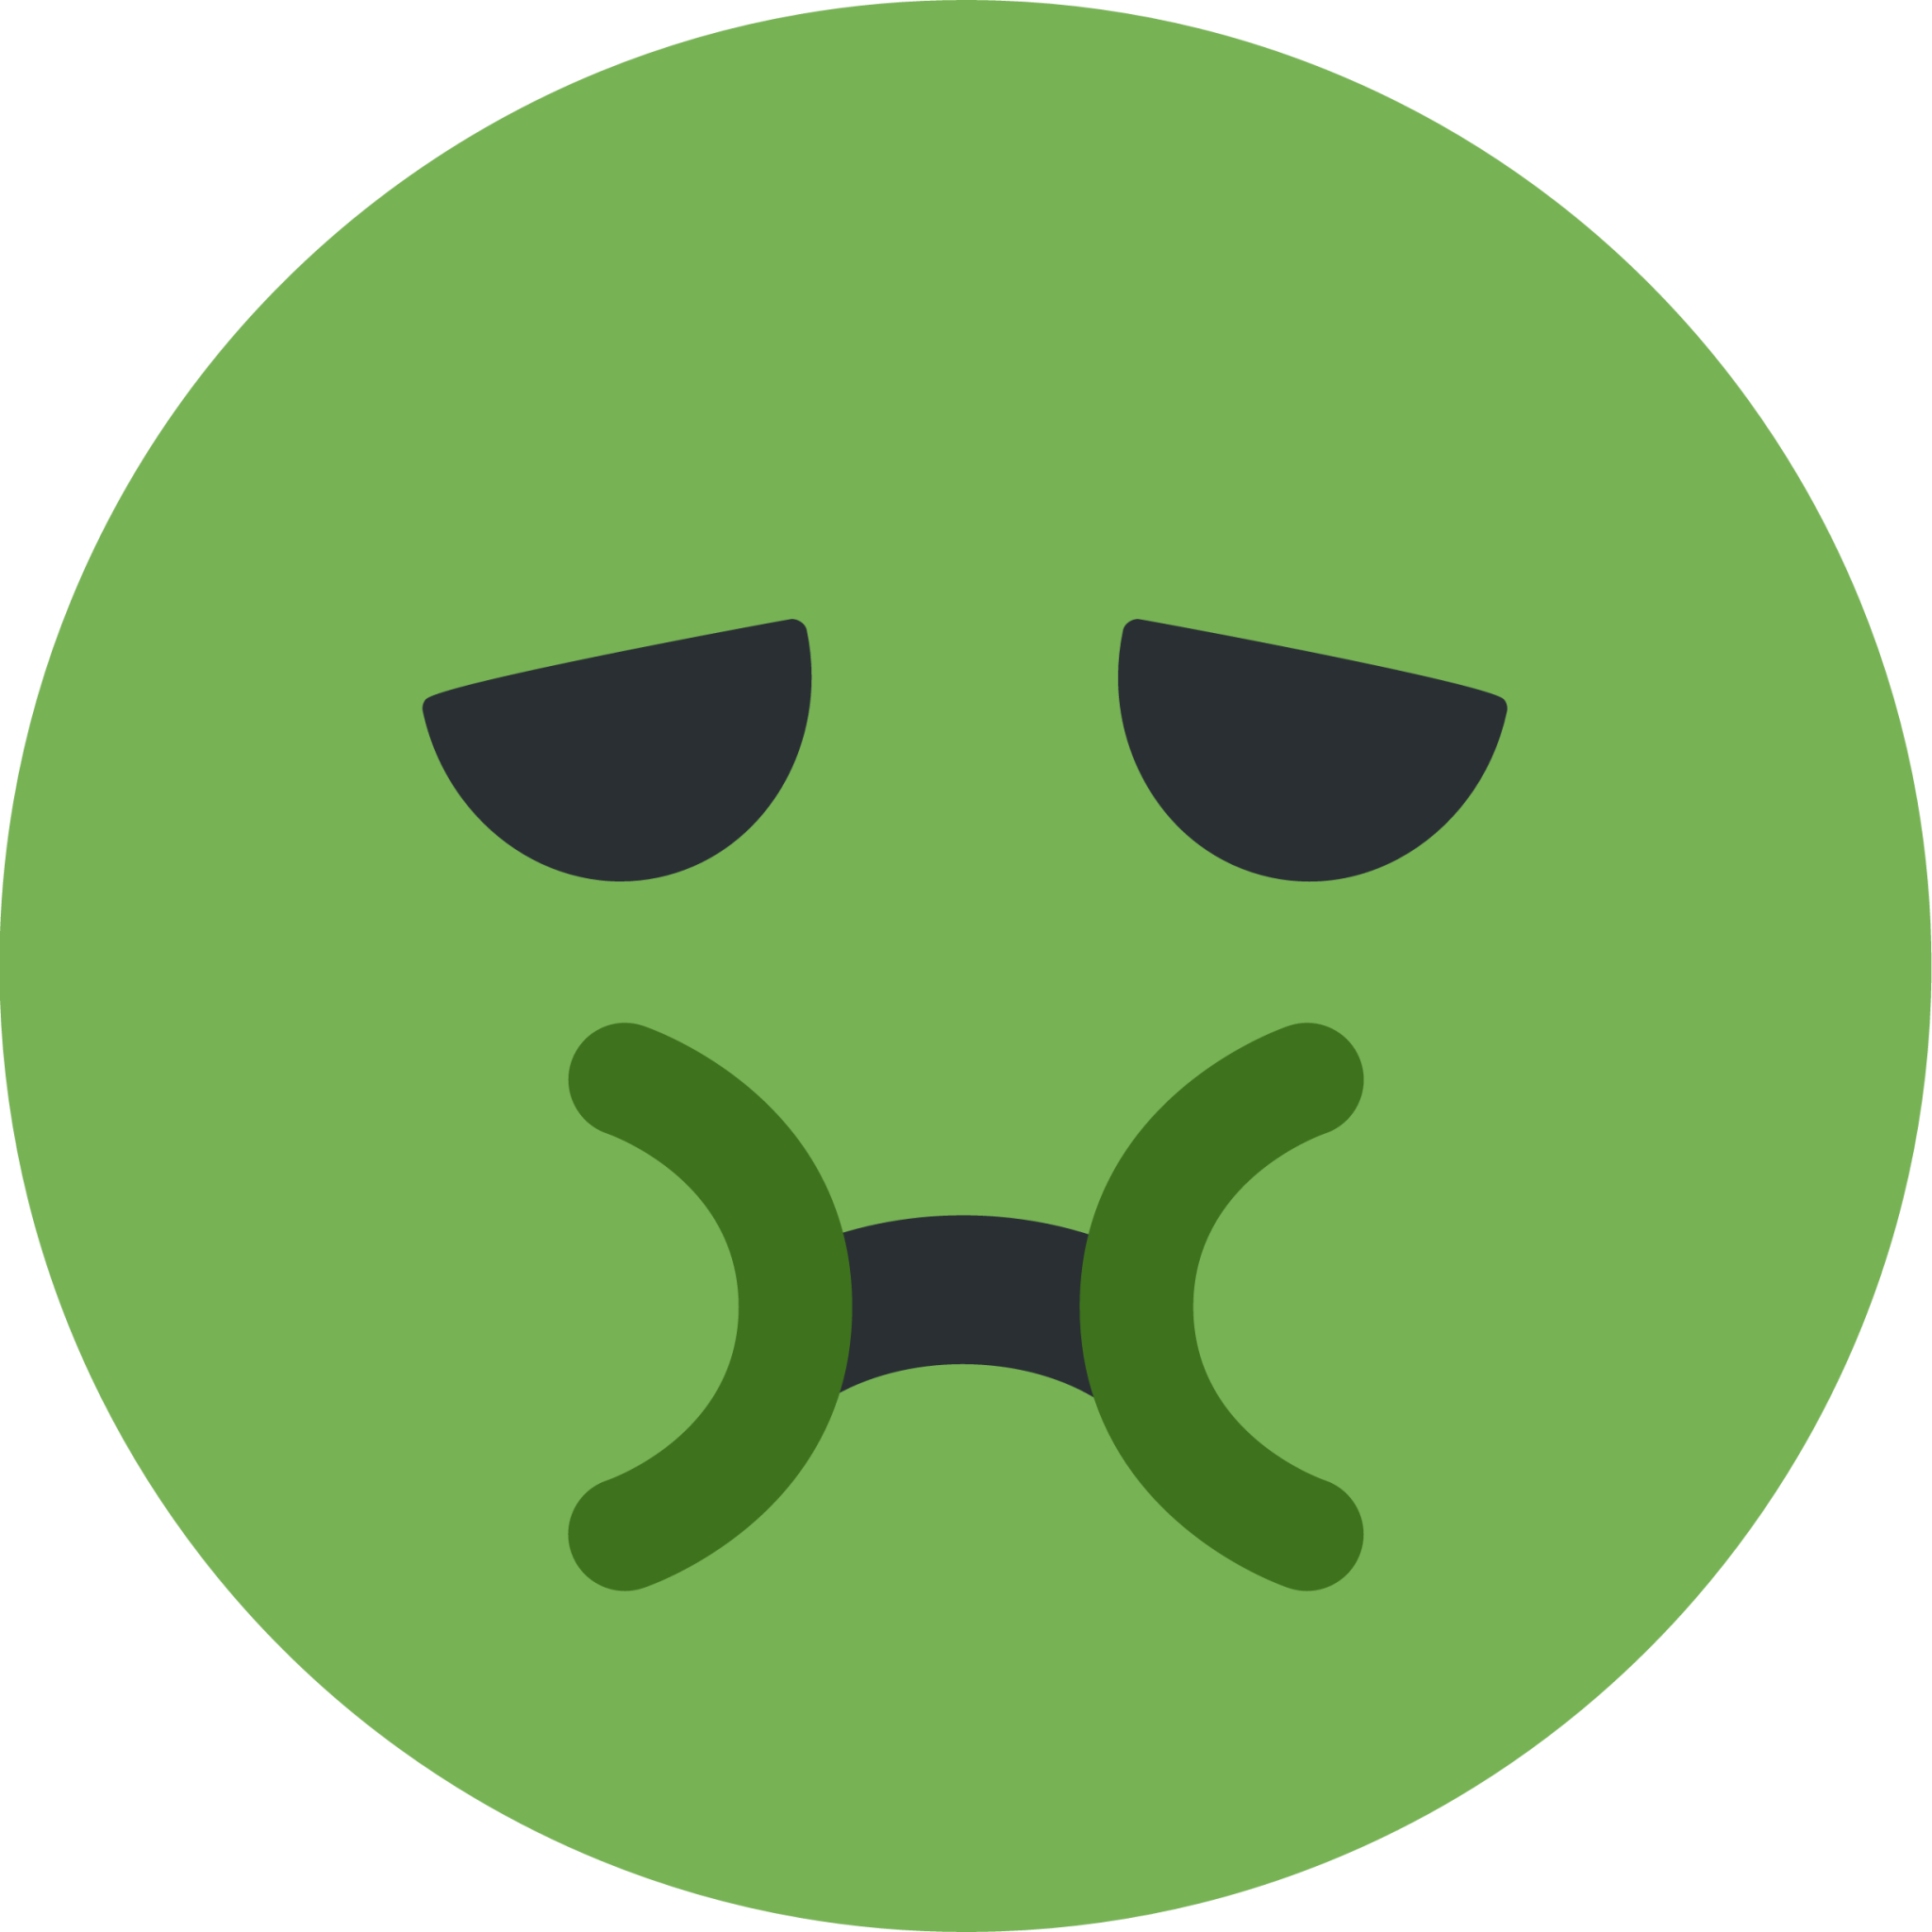 nauseated face emoji